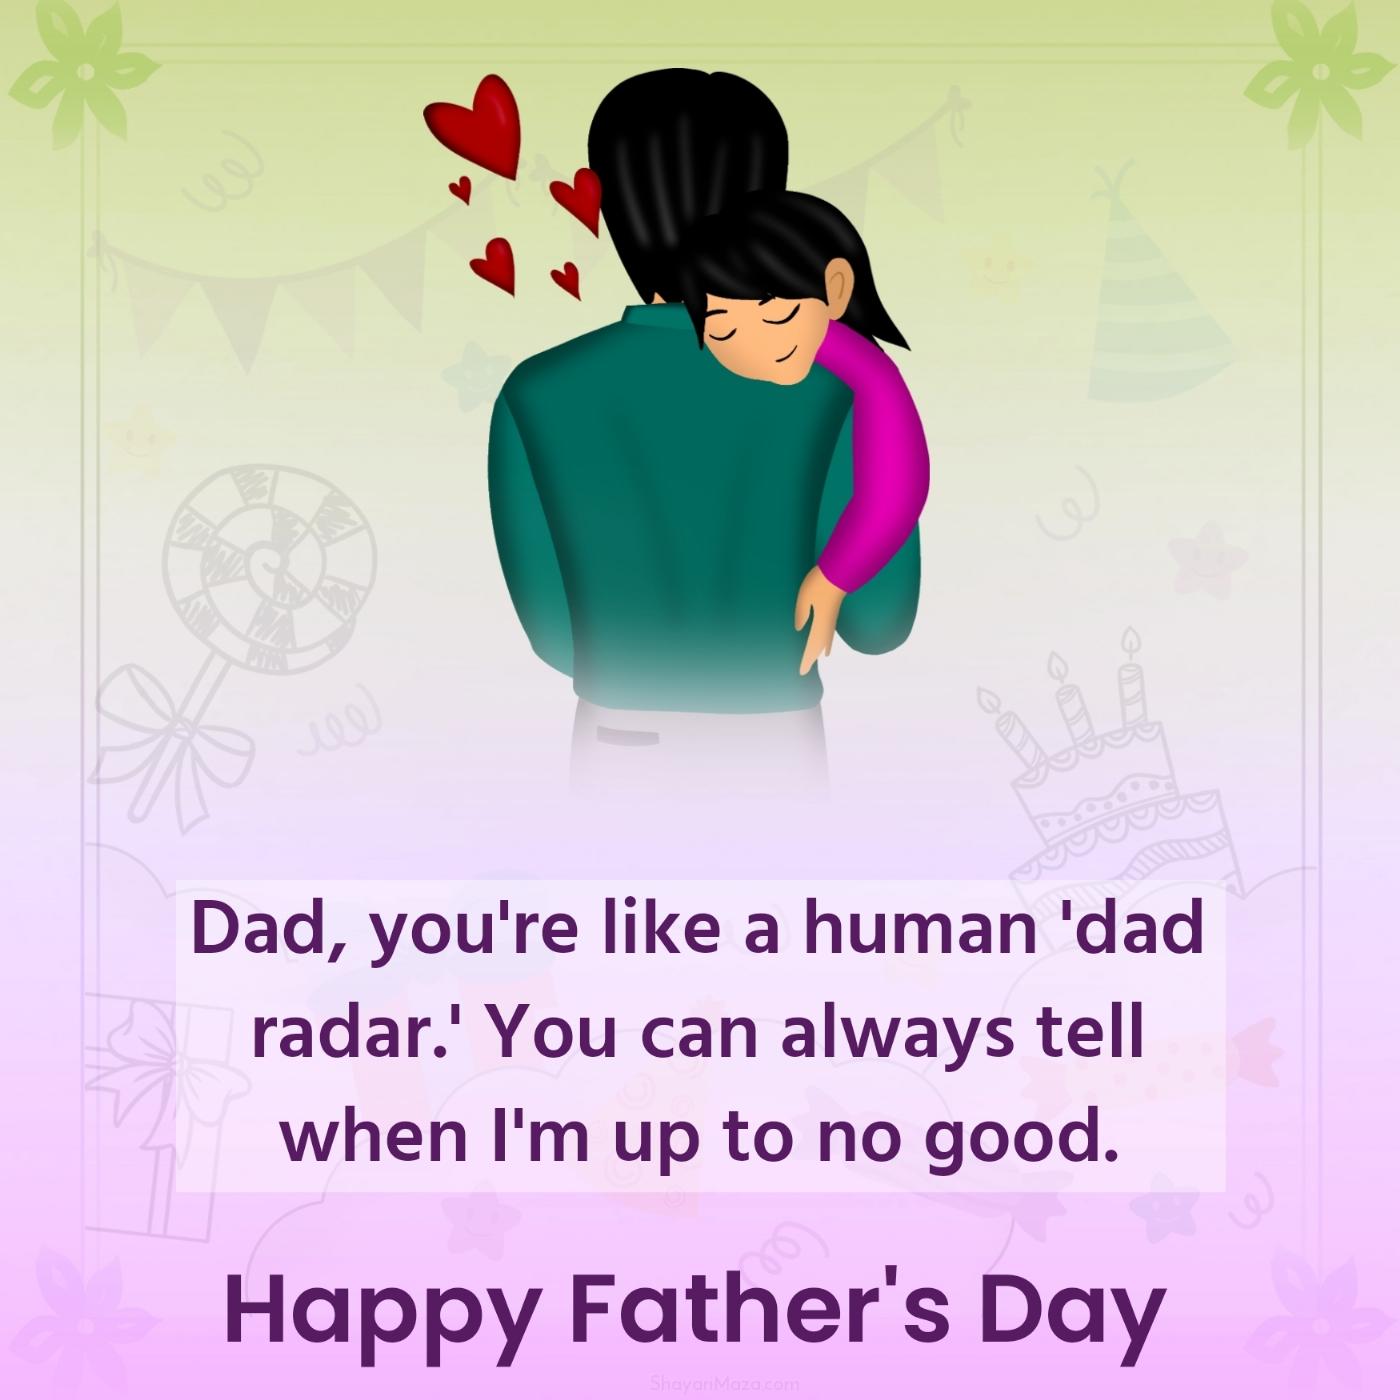 Dad you're like a human dad radar